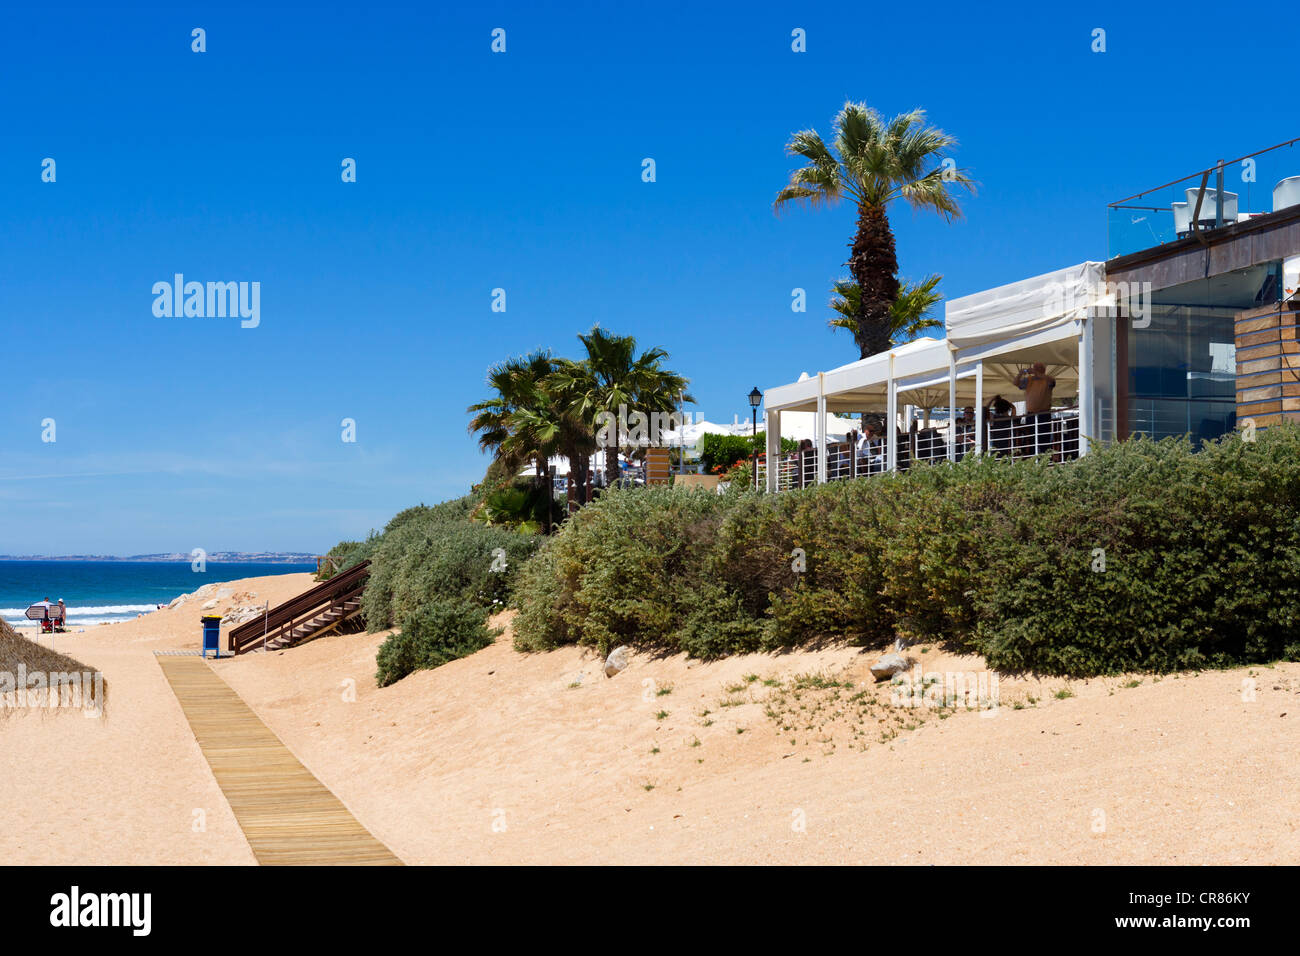 Ristorante sul mare nell'esclusiva località di Vale do Lobo, Algarve, PORTOGALLO Foto Stock